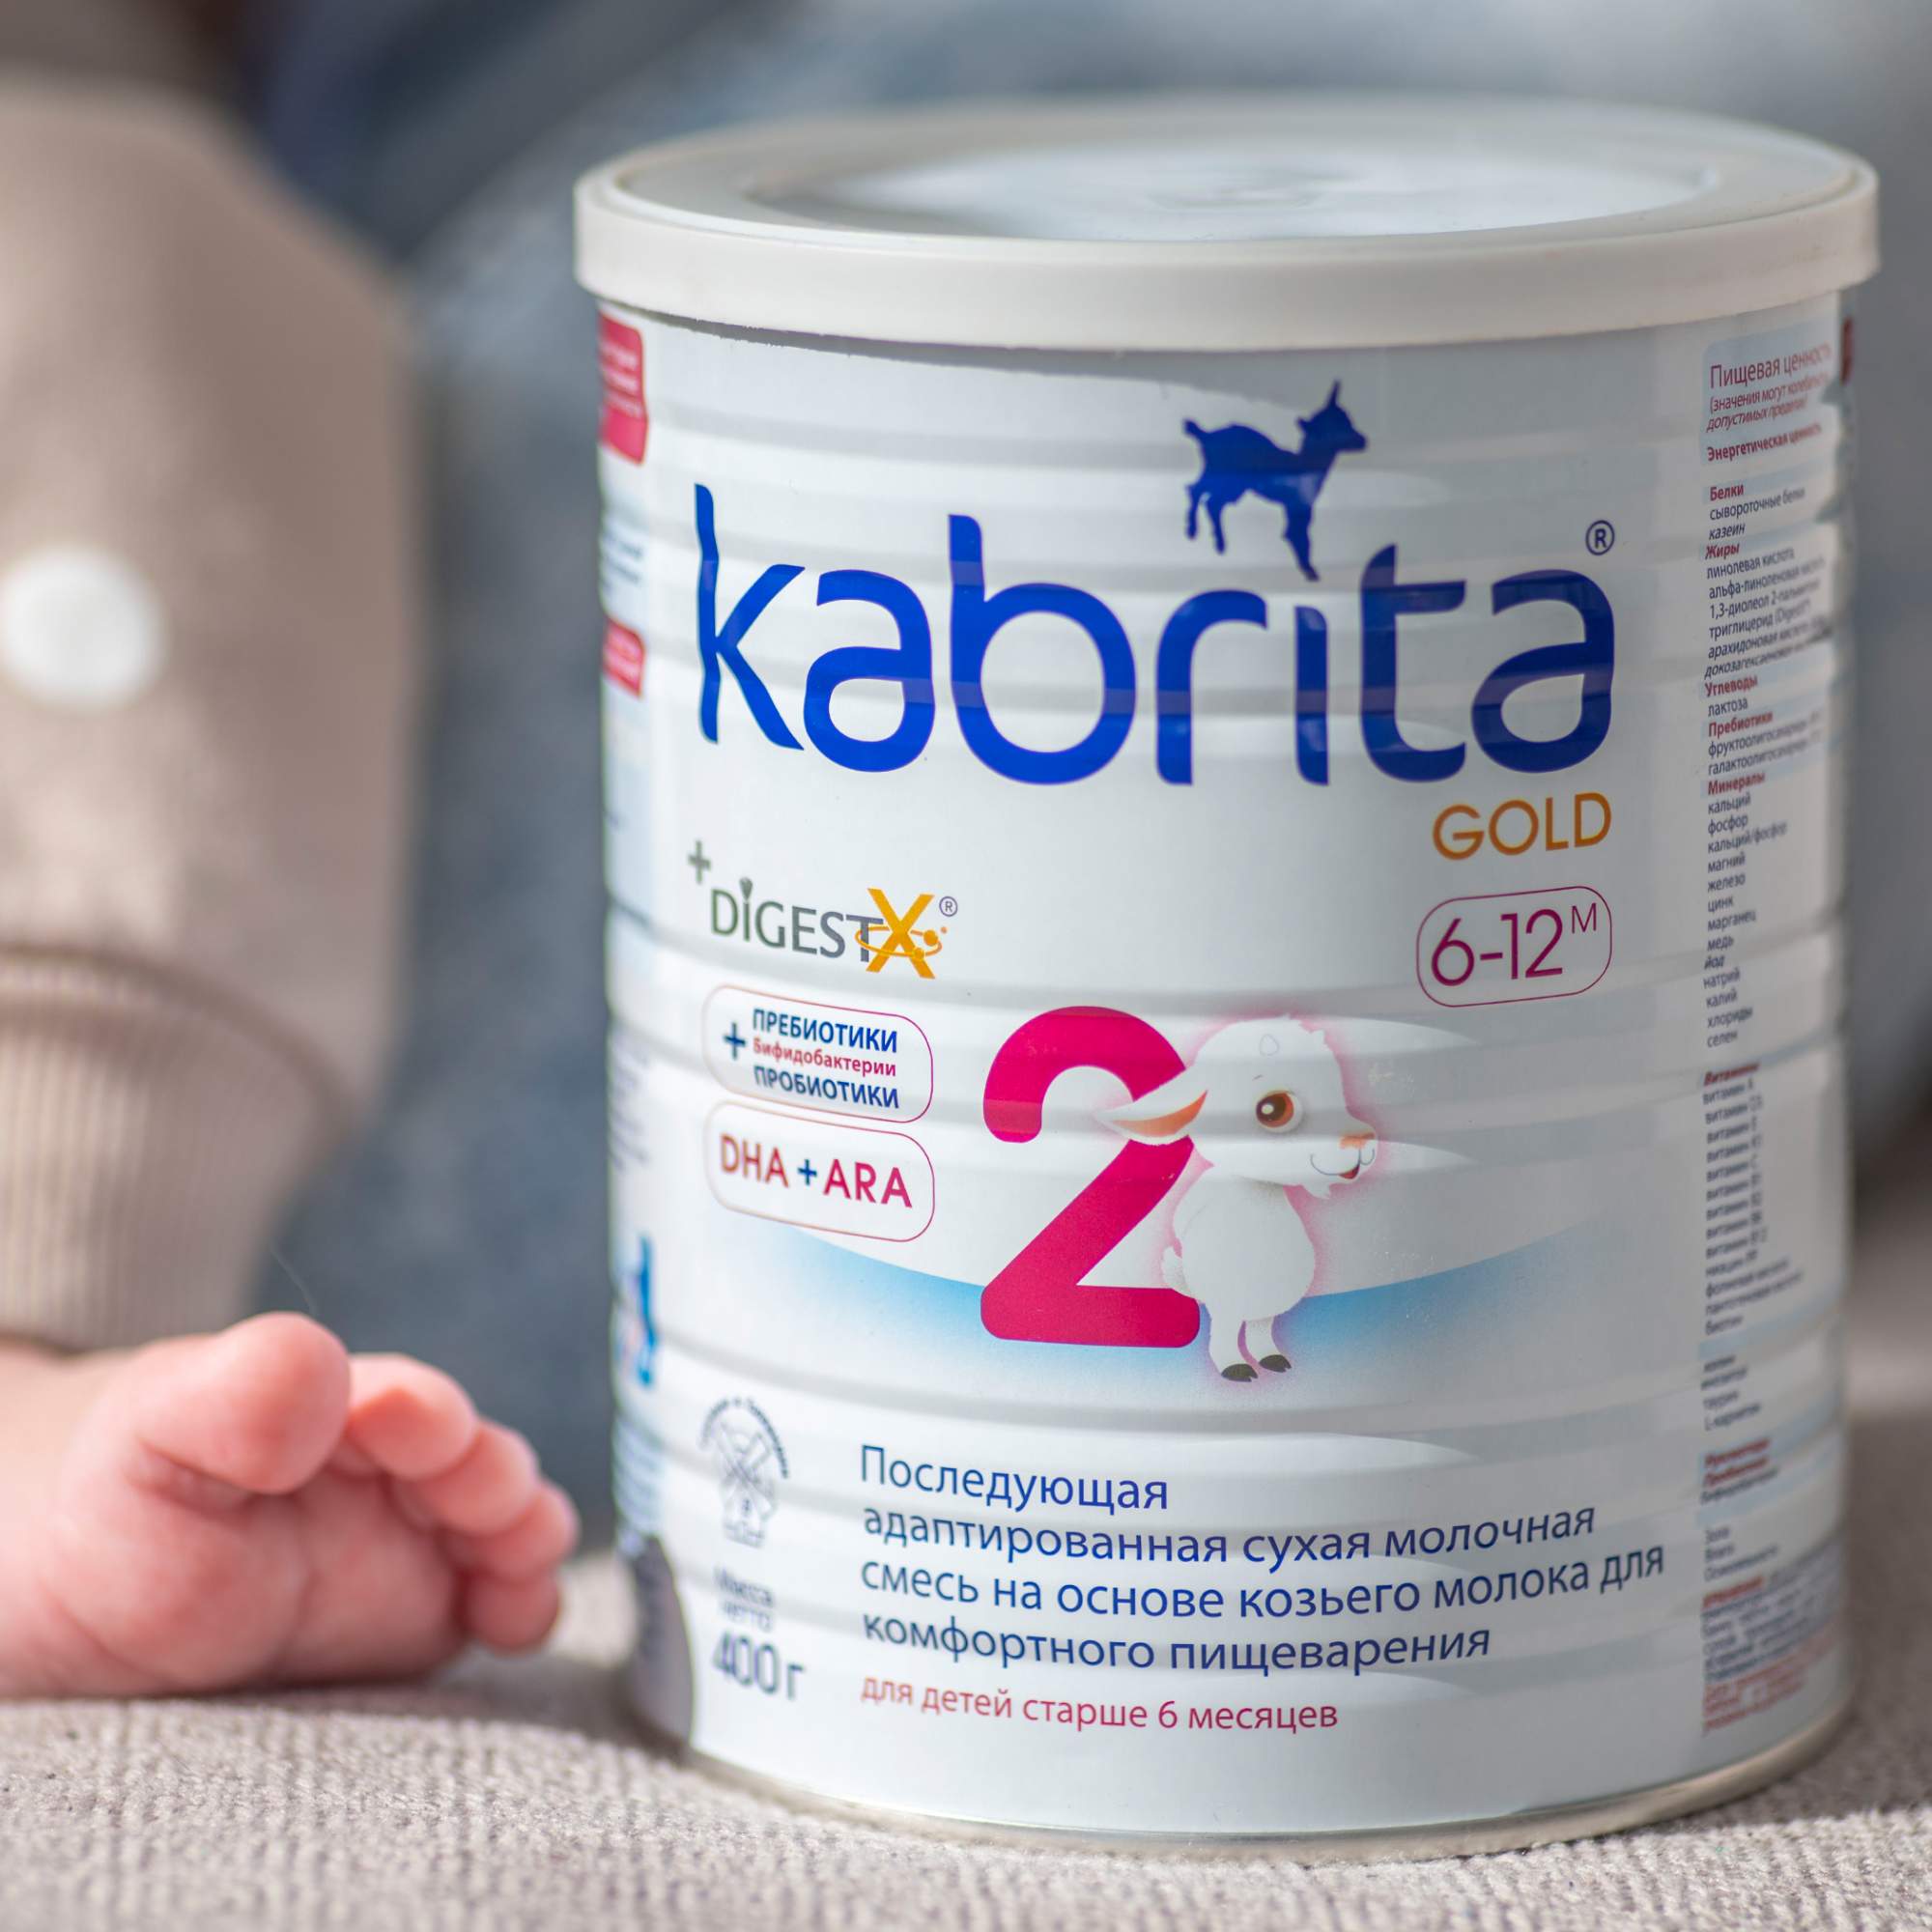 Смесь Kabrita 2 Gold для комфортного пищеварения (6-12 месяцев) 400 г